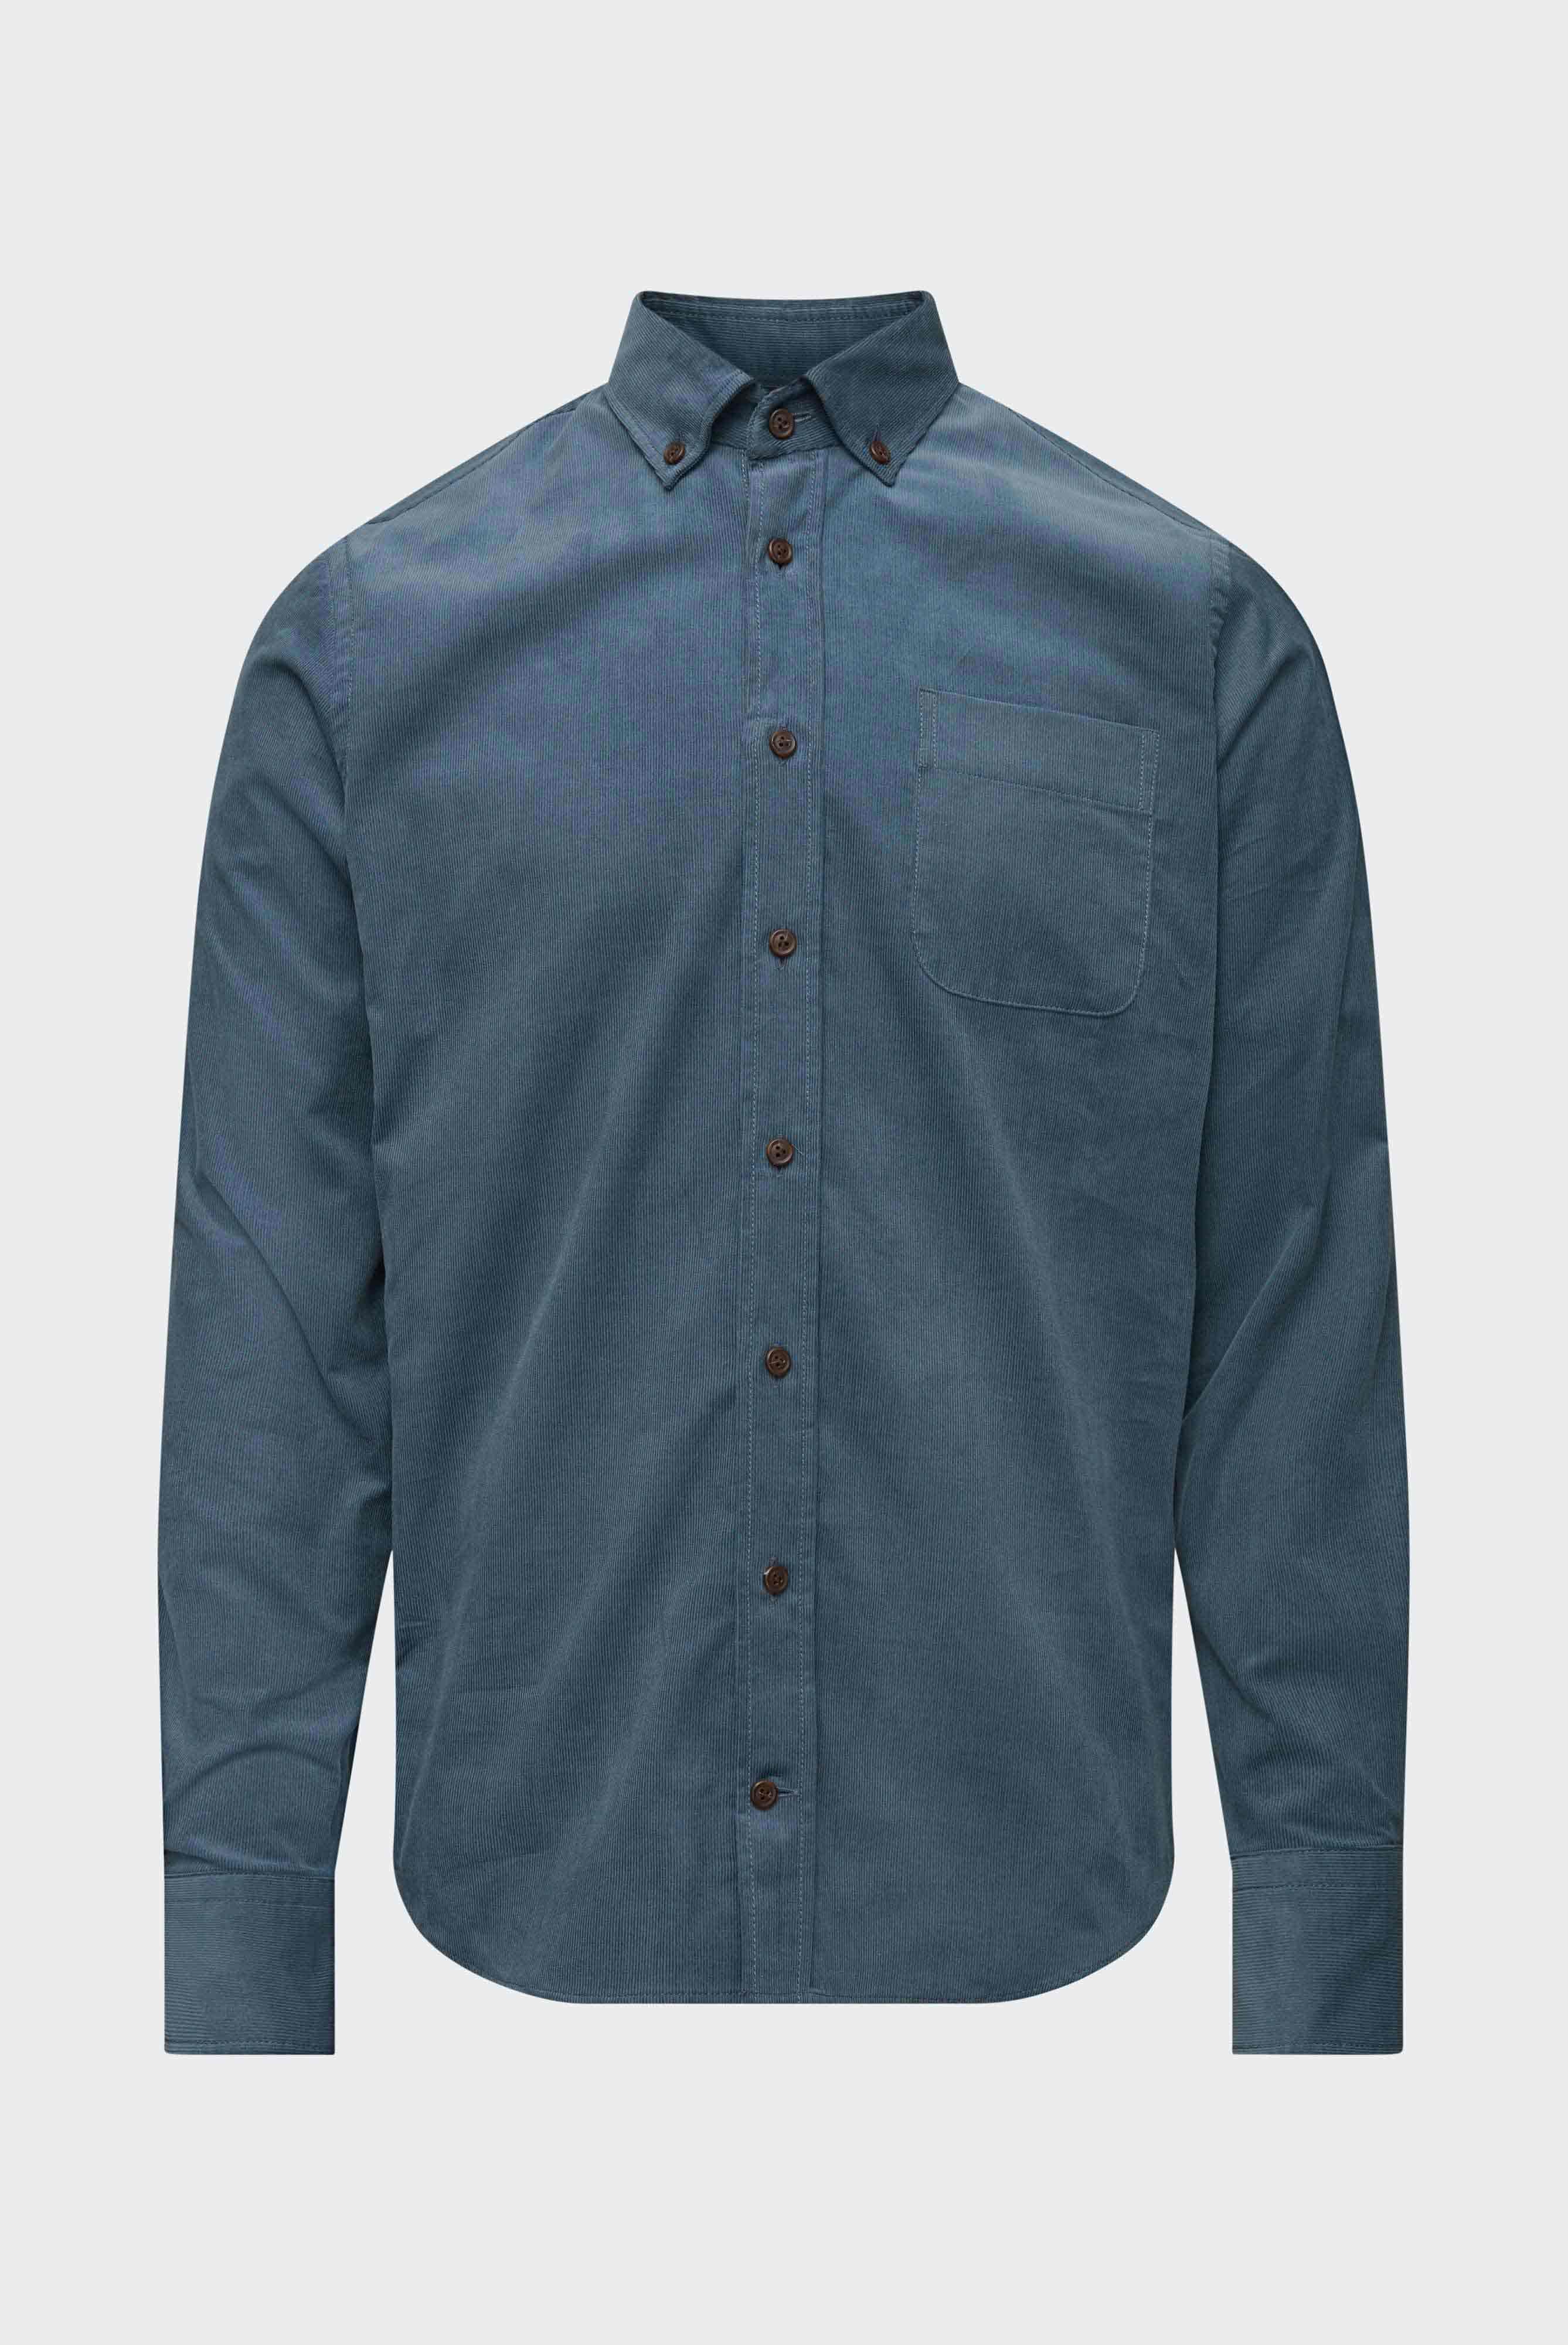 Casual Shirts+Corduroy Shirt Slim Fit+20.2012.9V.150271.770.43